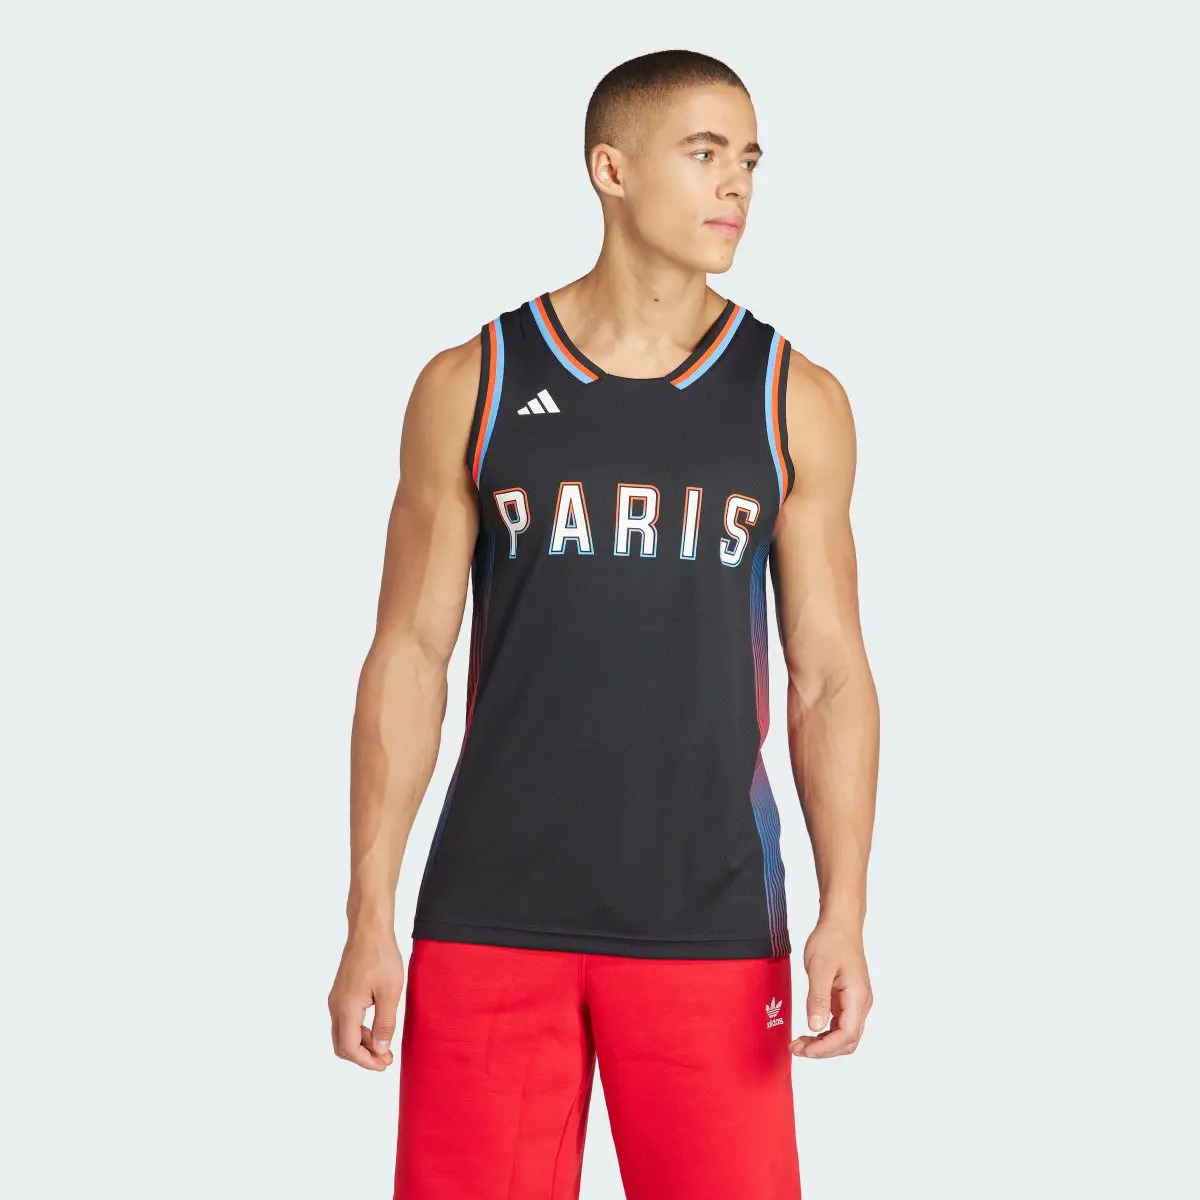 Adidas Paris Basketball AEROREADY Jersey. 2